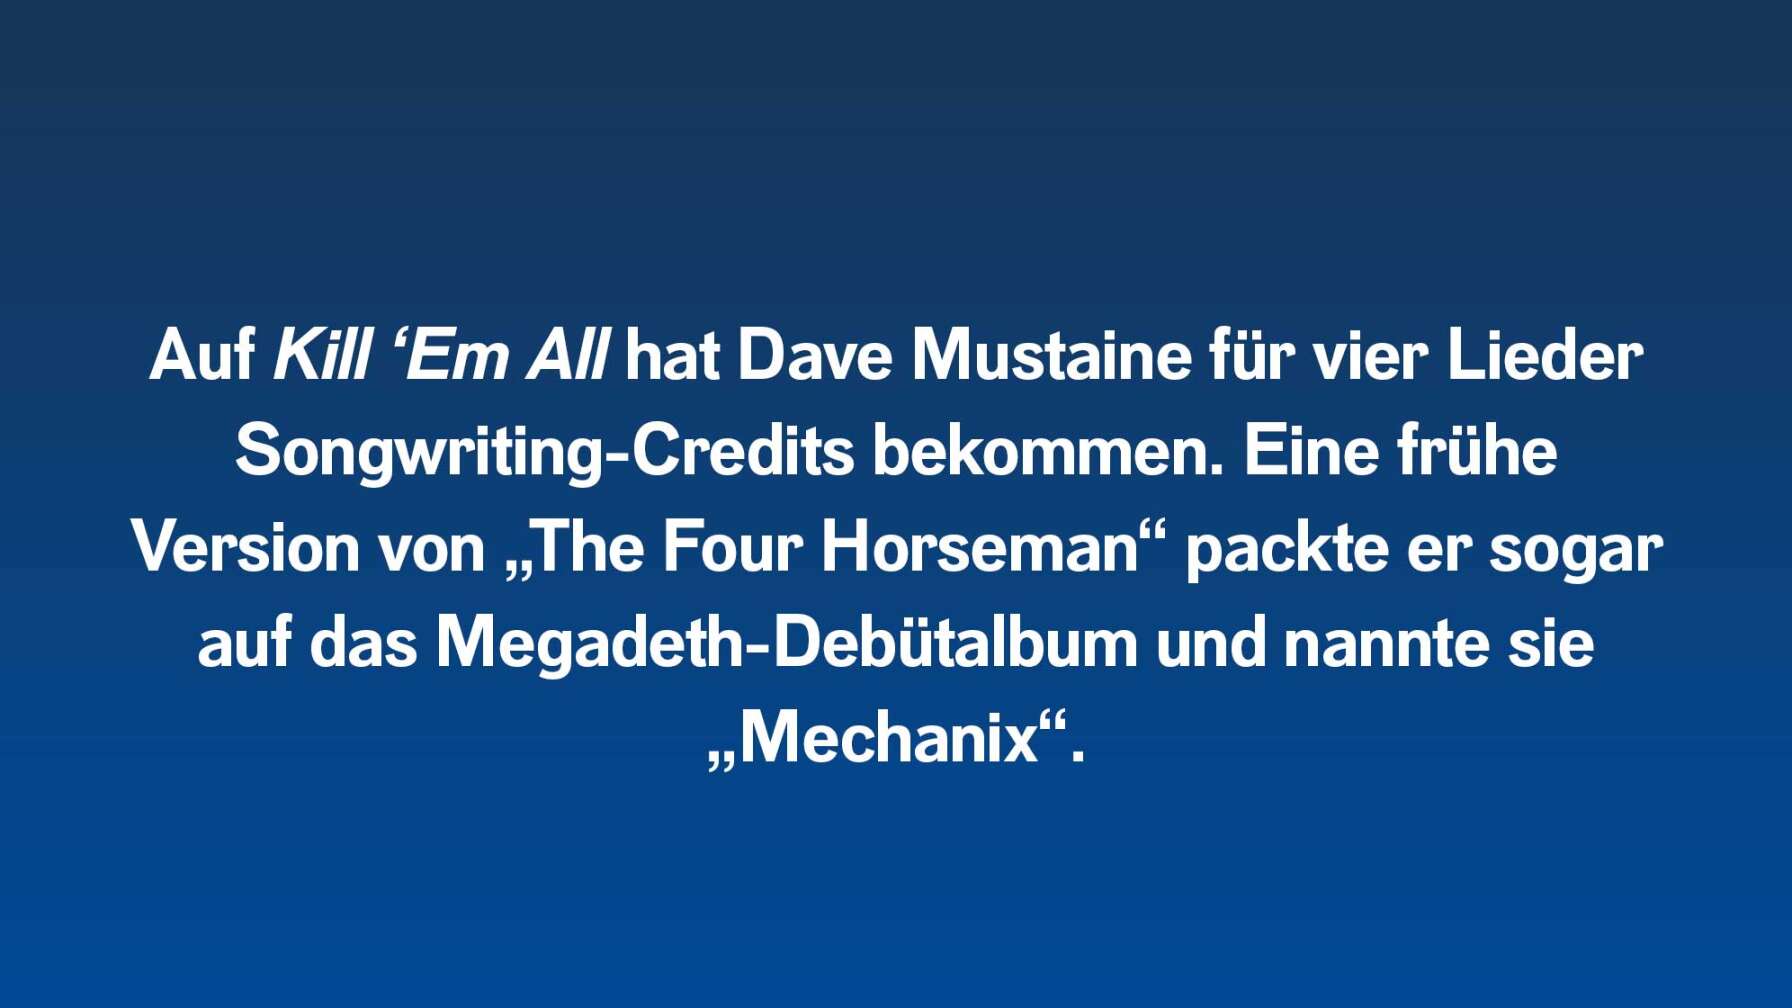 Auf Kill ‘Em All hat Dave Mustaine für vier Lieder Songwriting-Credits bekommen. Eine frühe Version von „The Four Horseman“ packte er sogar auf das Megadeth-Debütalbum und nannte sie „Mechanix“.